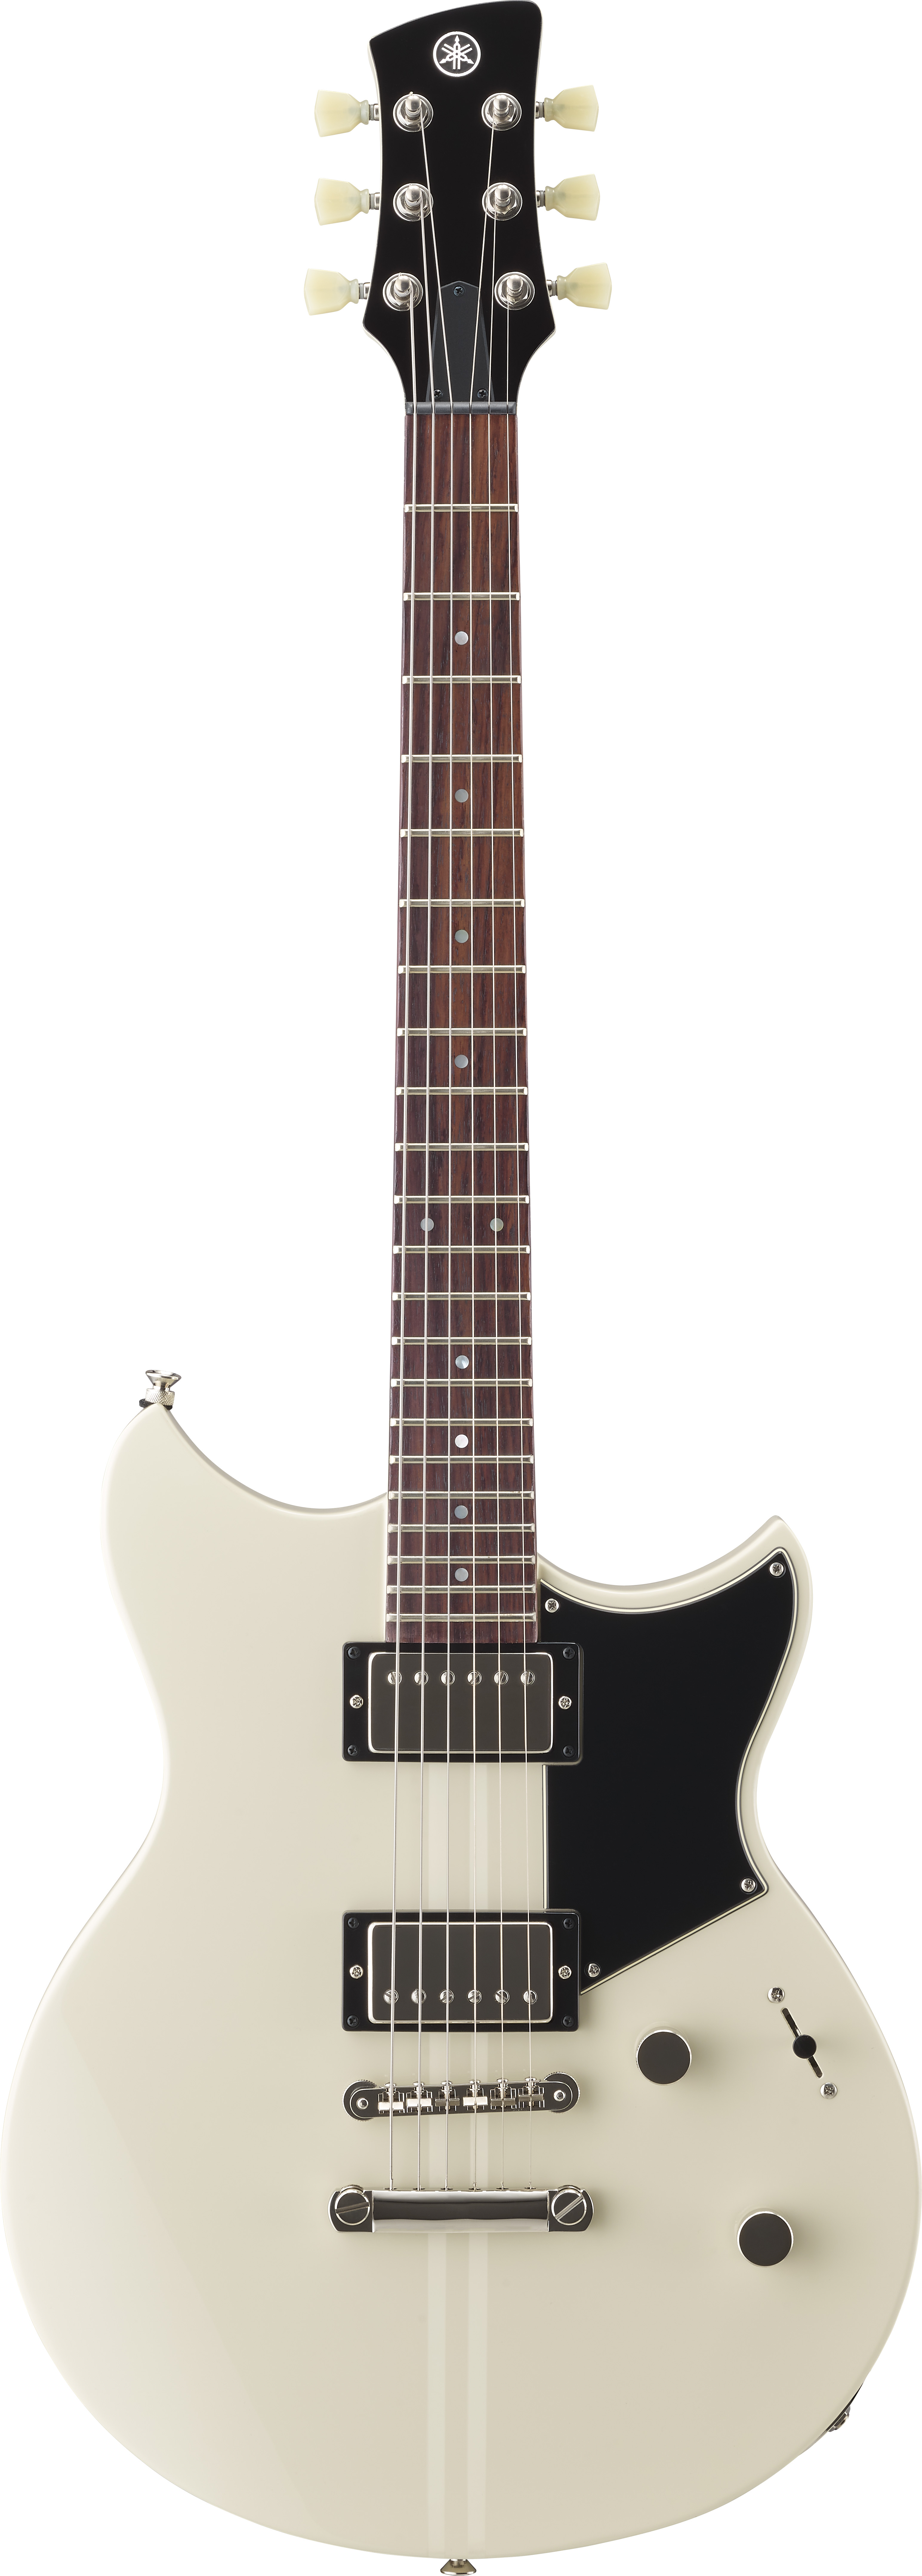 Billede af Yamaha Revstar RSE20VW El-guitar (Vintage White)